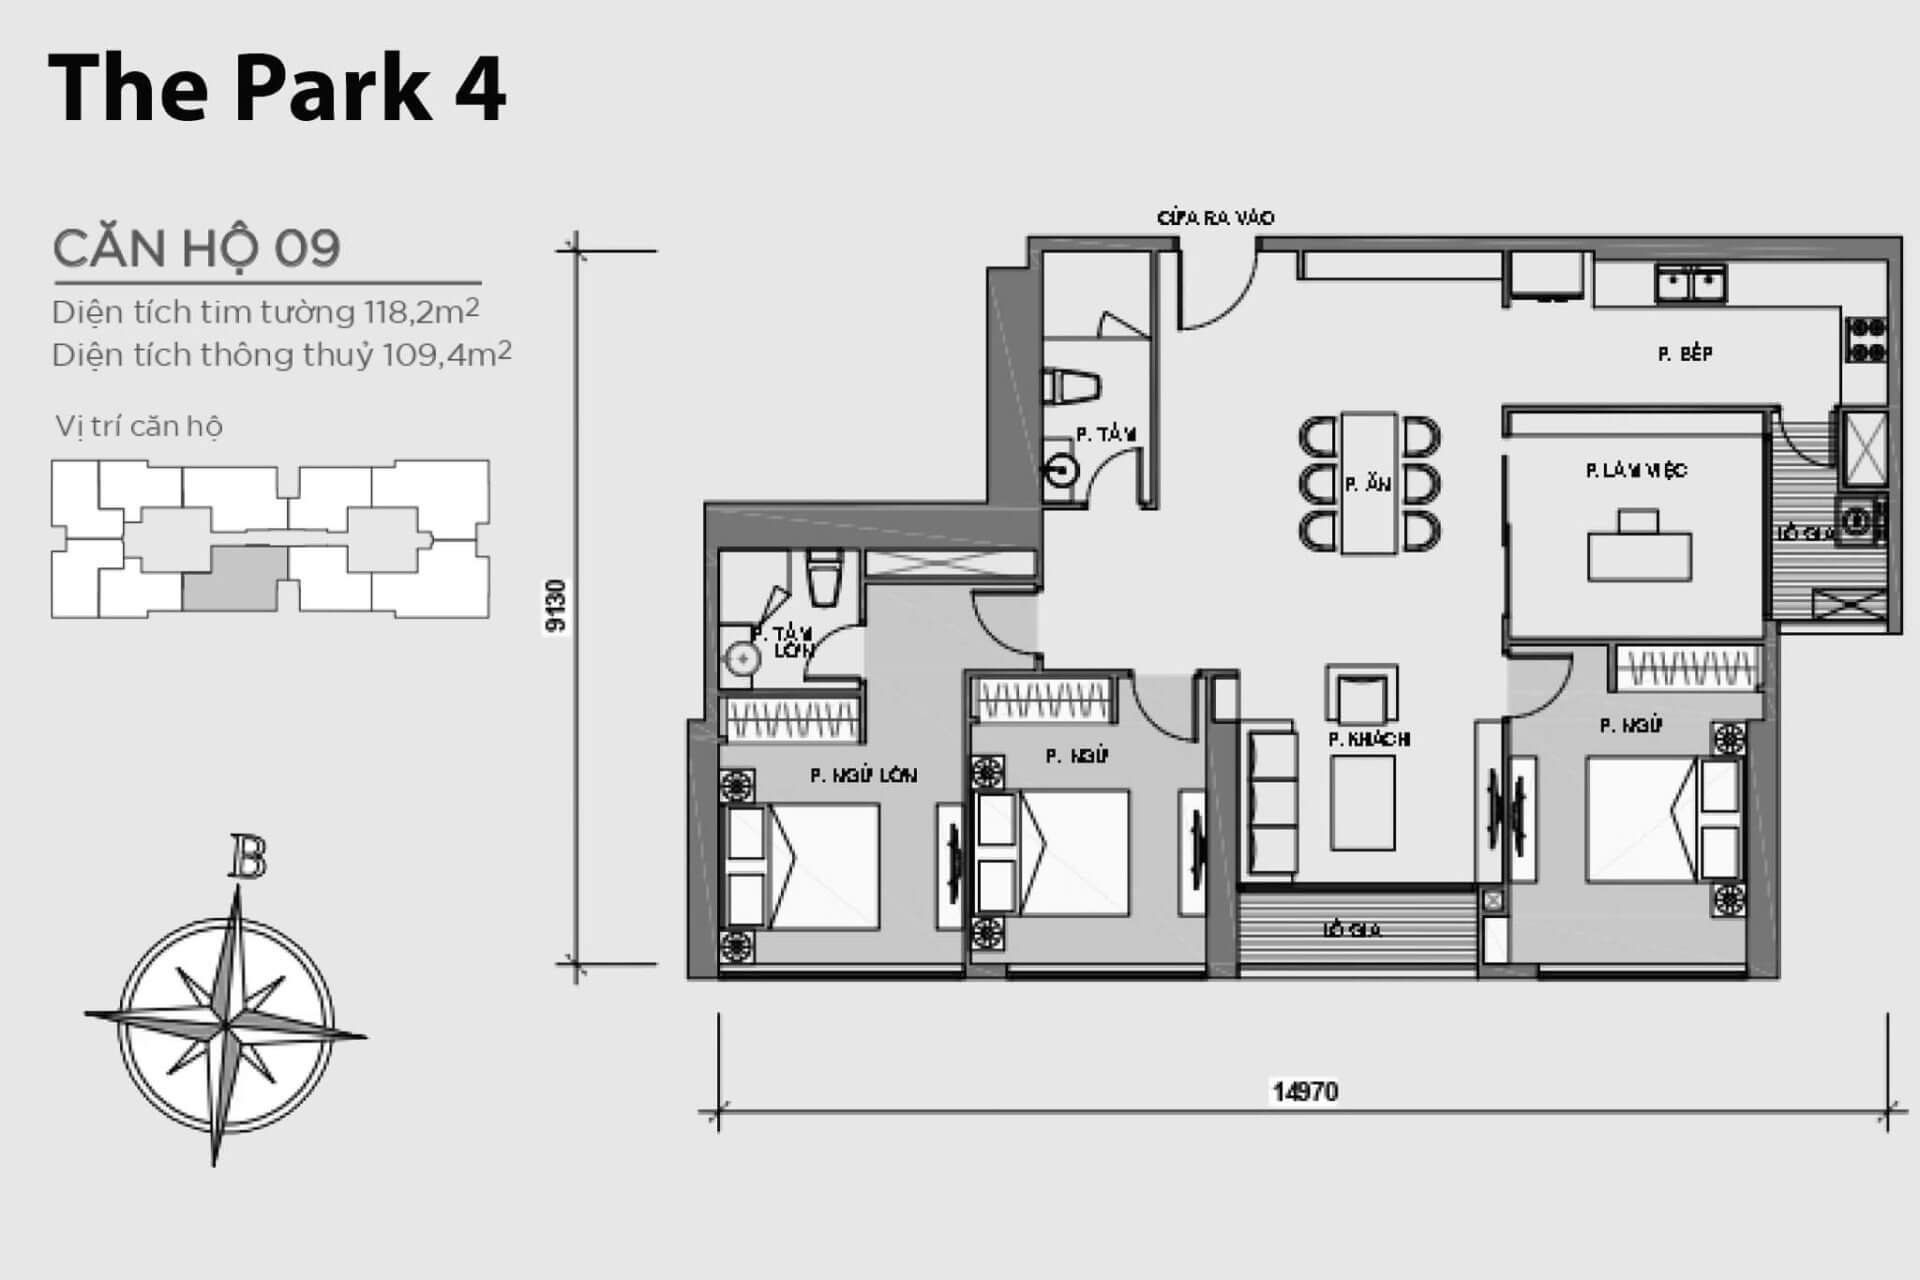 mặt bằng layout căn hộ số 9 Park 4 Vinhomes Central Park